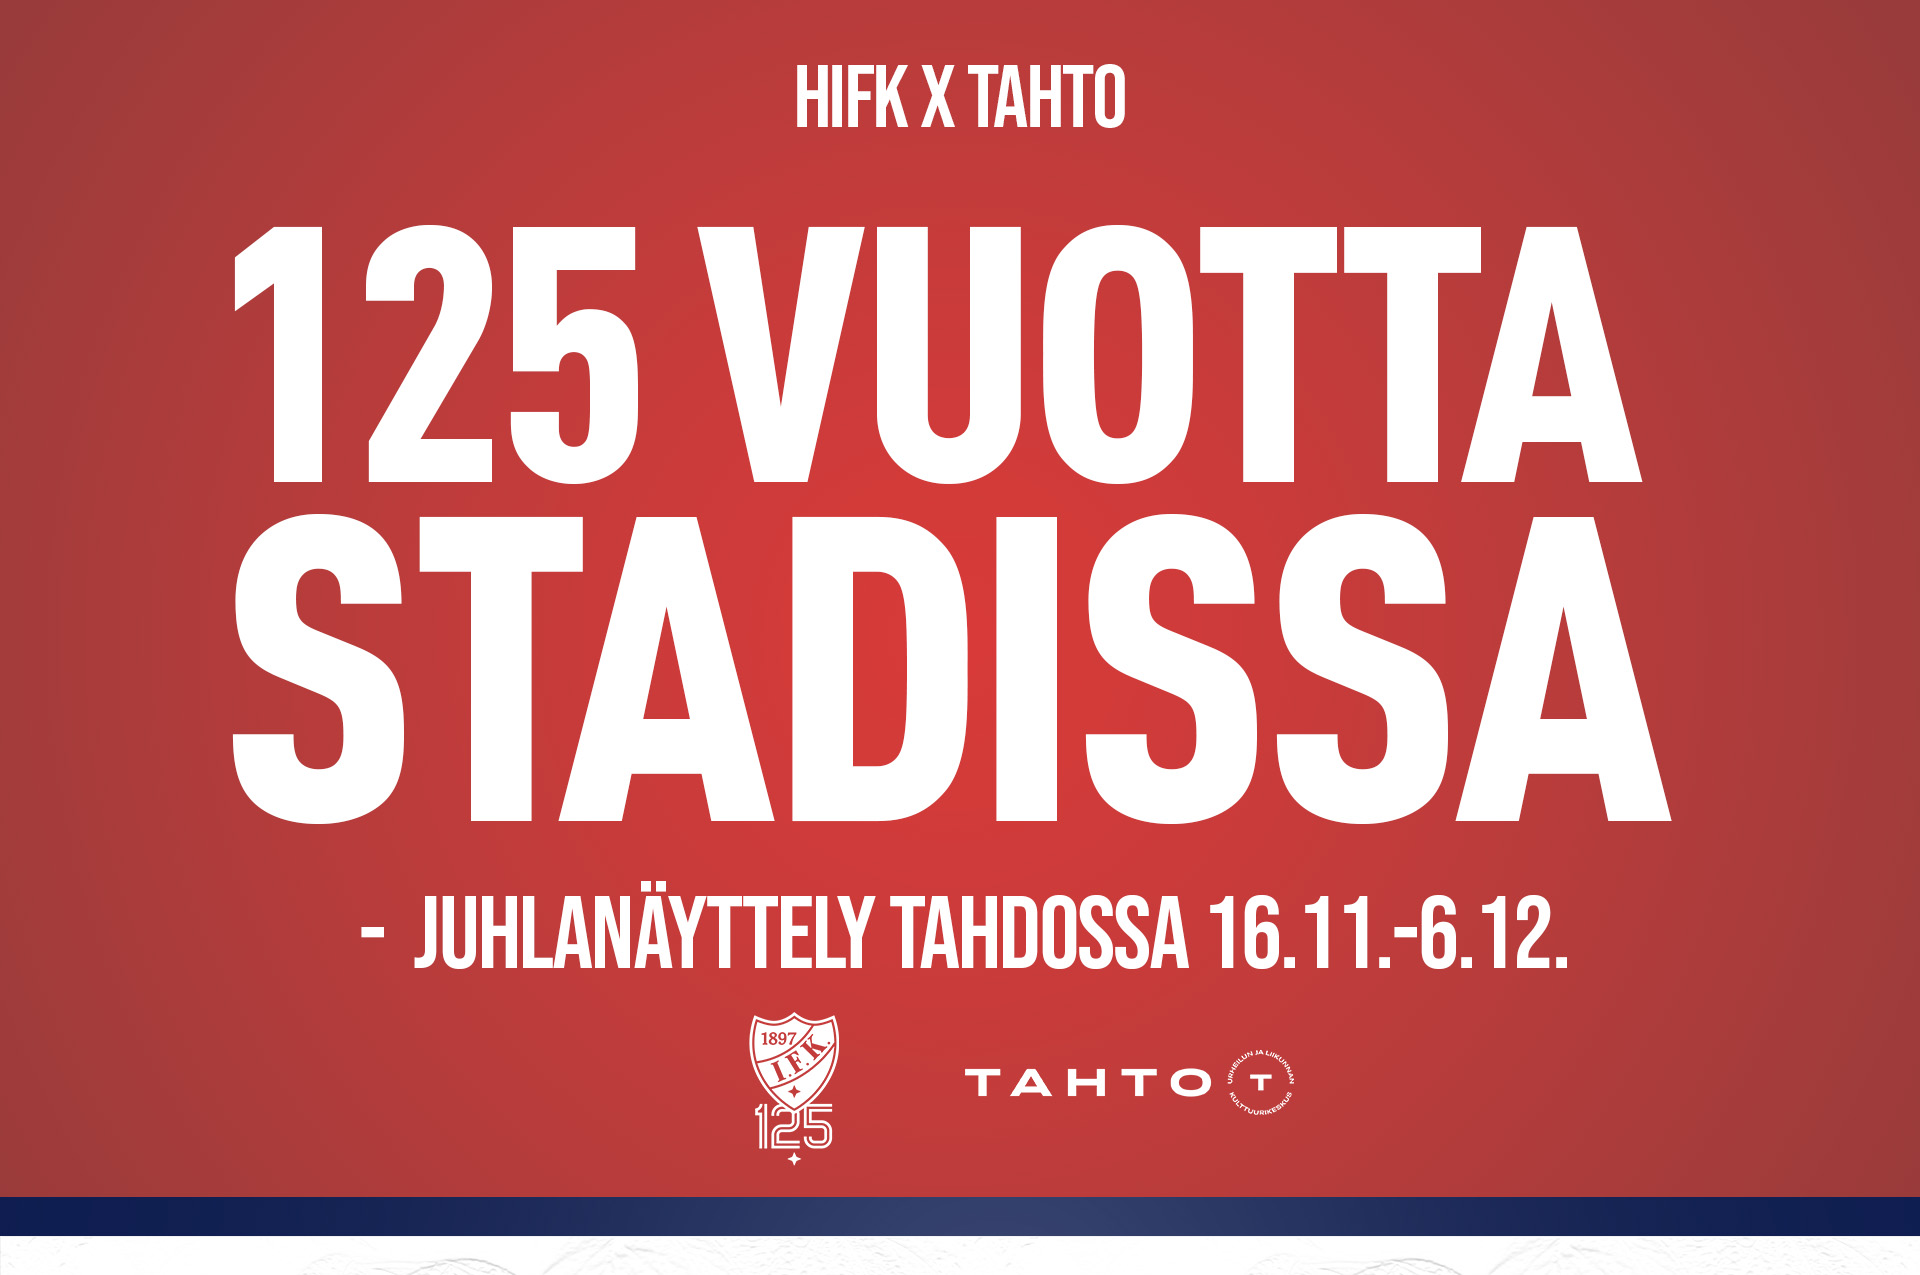 HIFK 125 vuotta Stadissa -juhlanäyttely TAHDOSSA